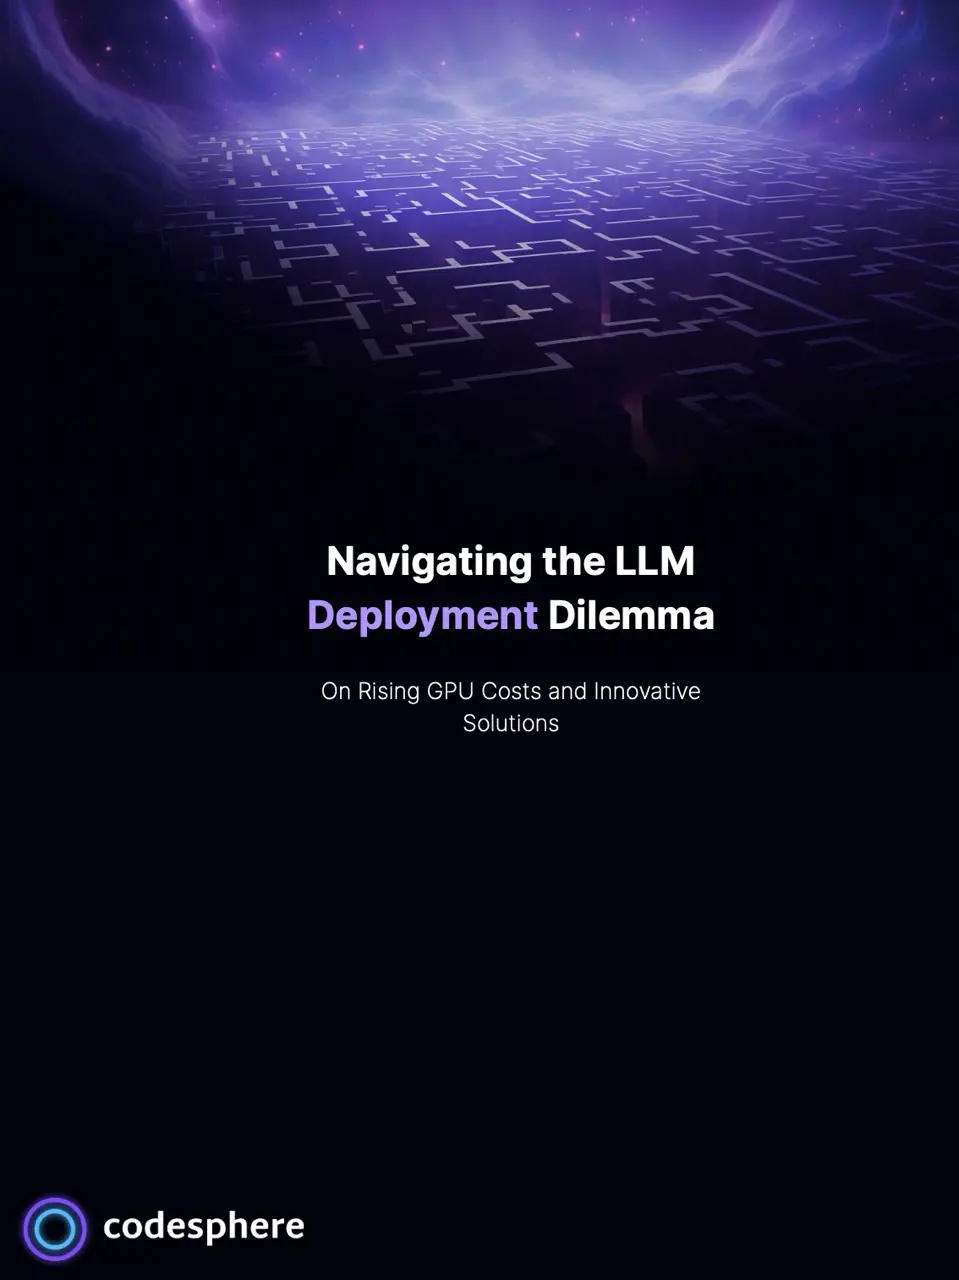 .Navigating the LLM deployment dilemma